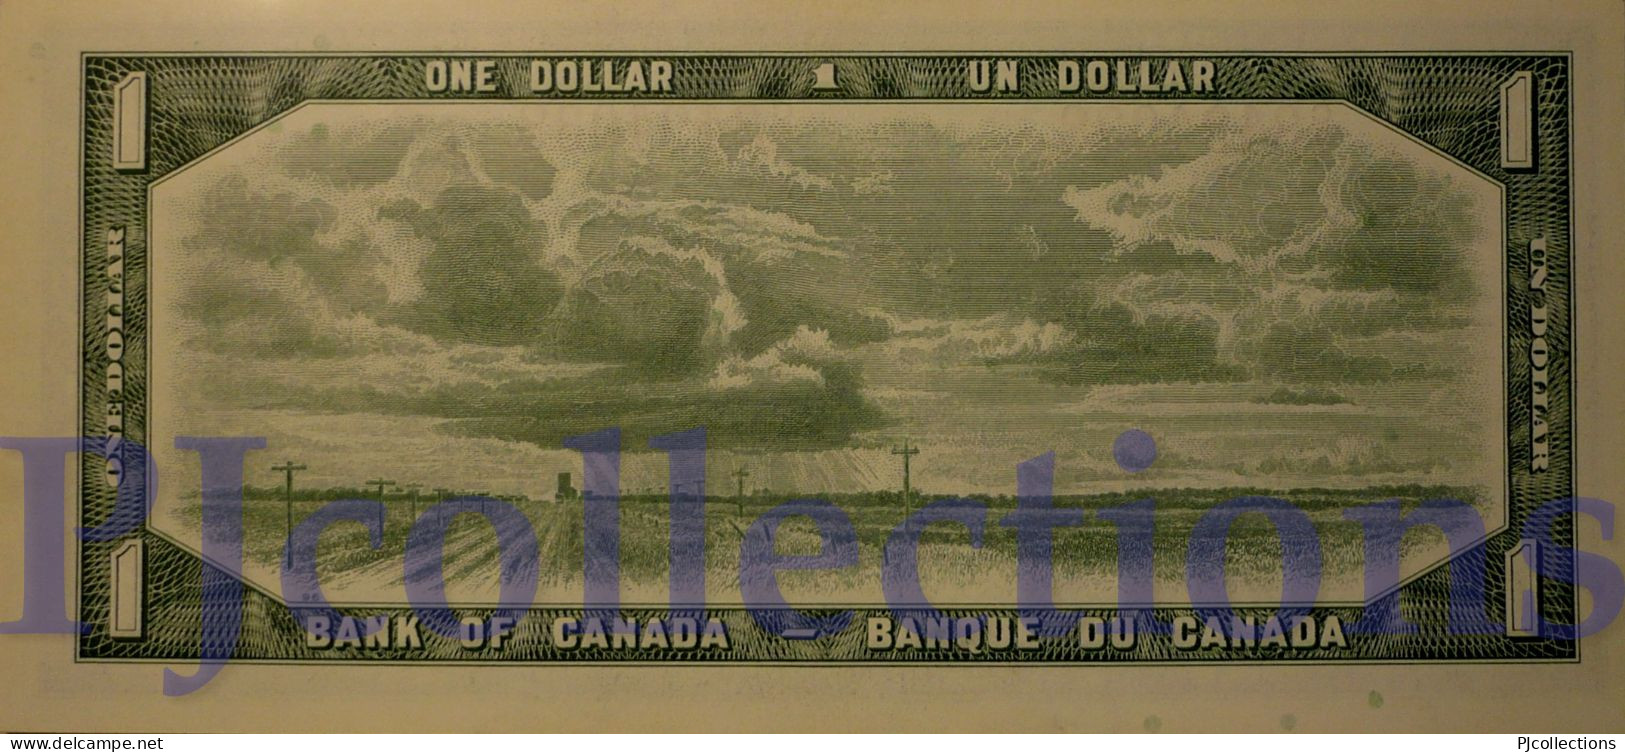 CANADA 1 DOLLAR 1954 PICK 75b UNC - Canada